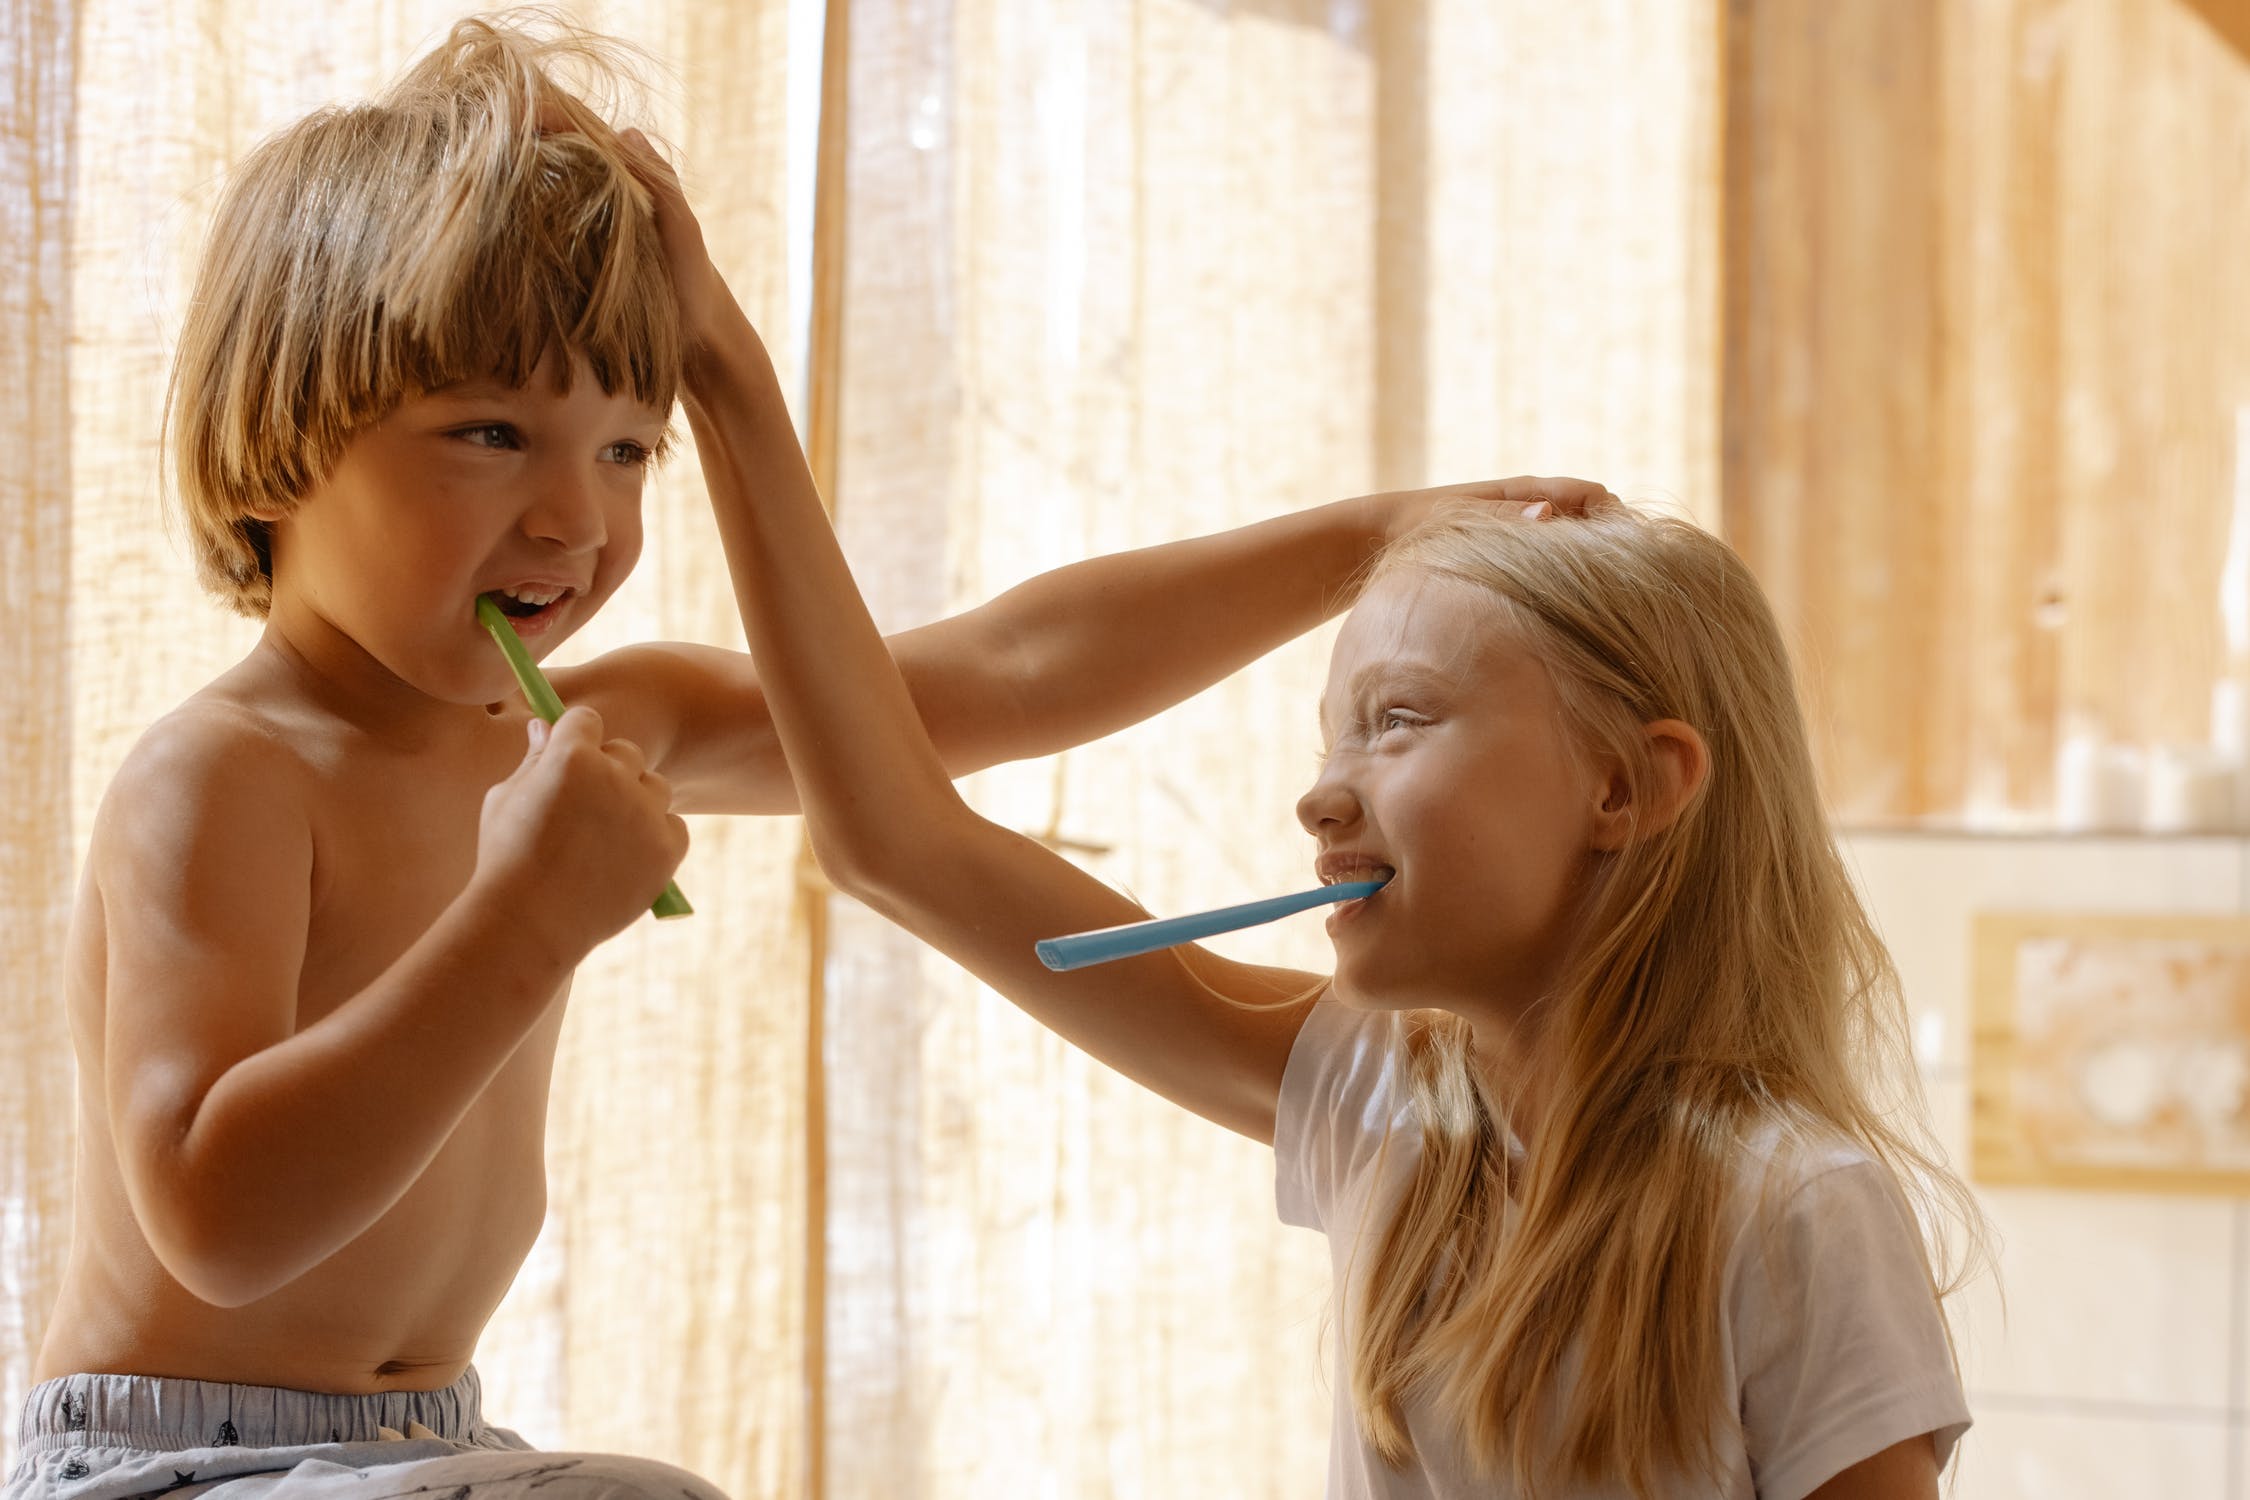 Children brushing teeth